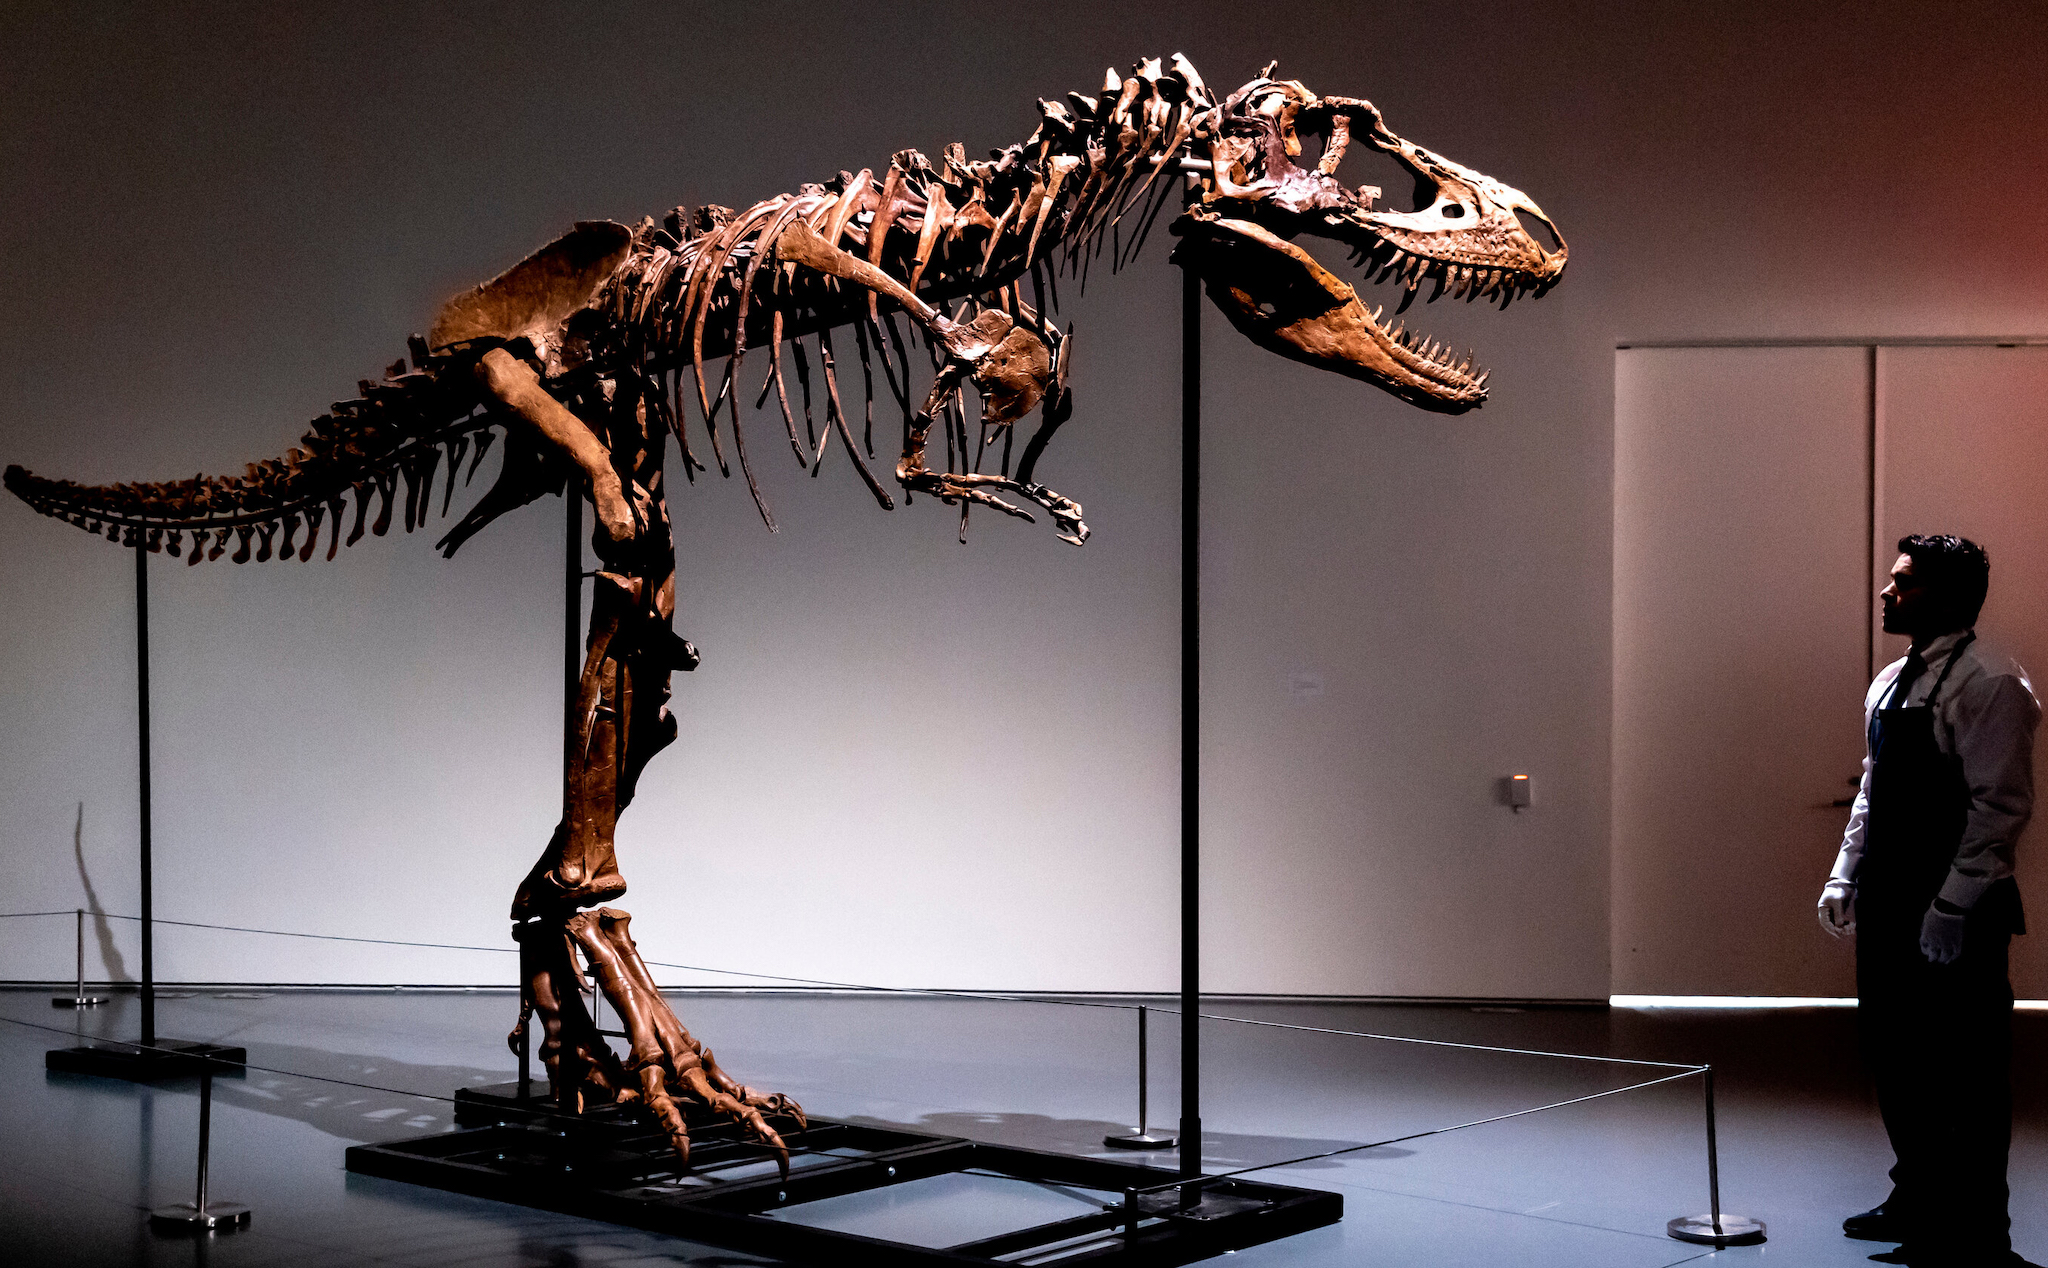 Hoá thạch hoàn chỉnh của Gorgosaurus lần đầu tiên được bán đấu giá, dự kiến thu về gần 200 tỷ đồng